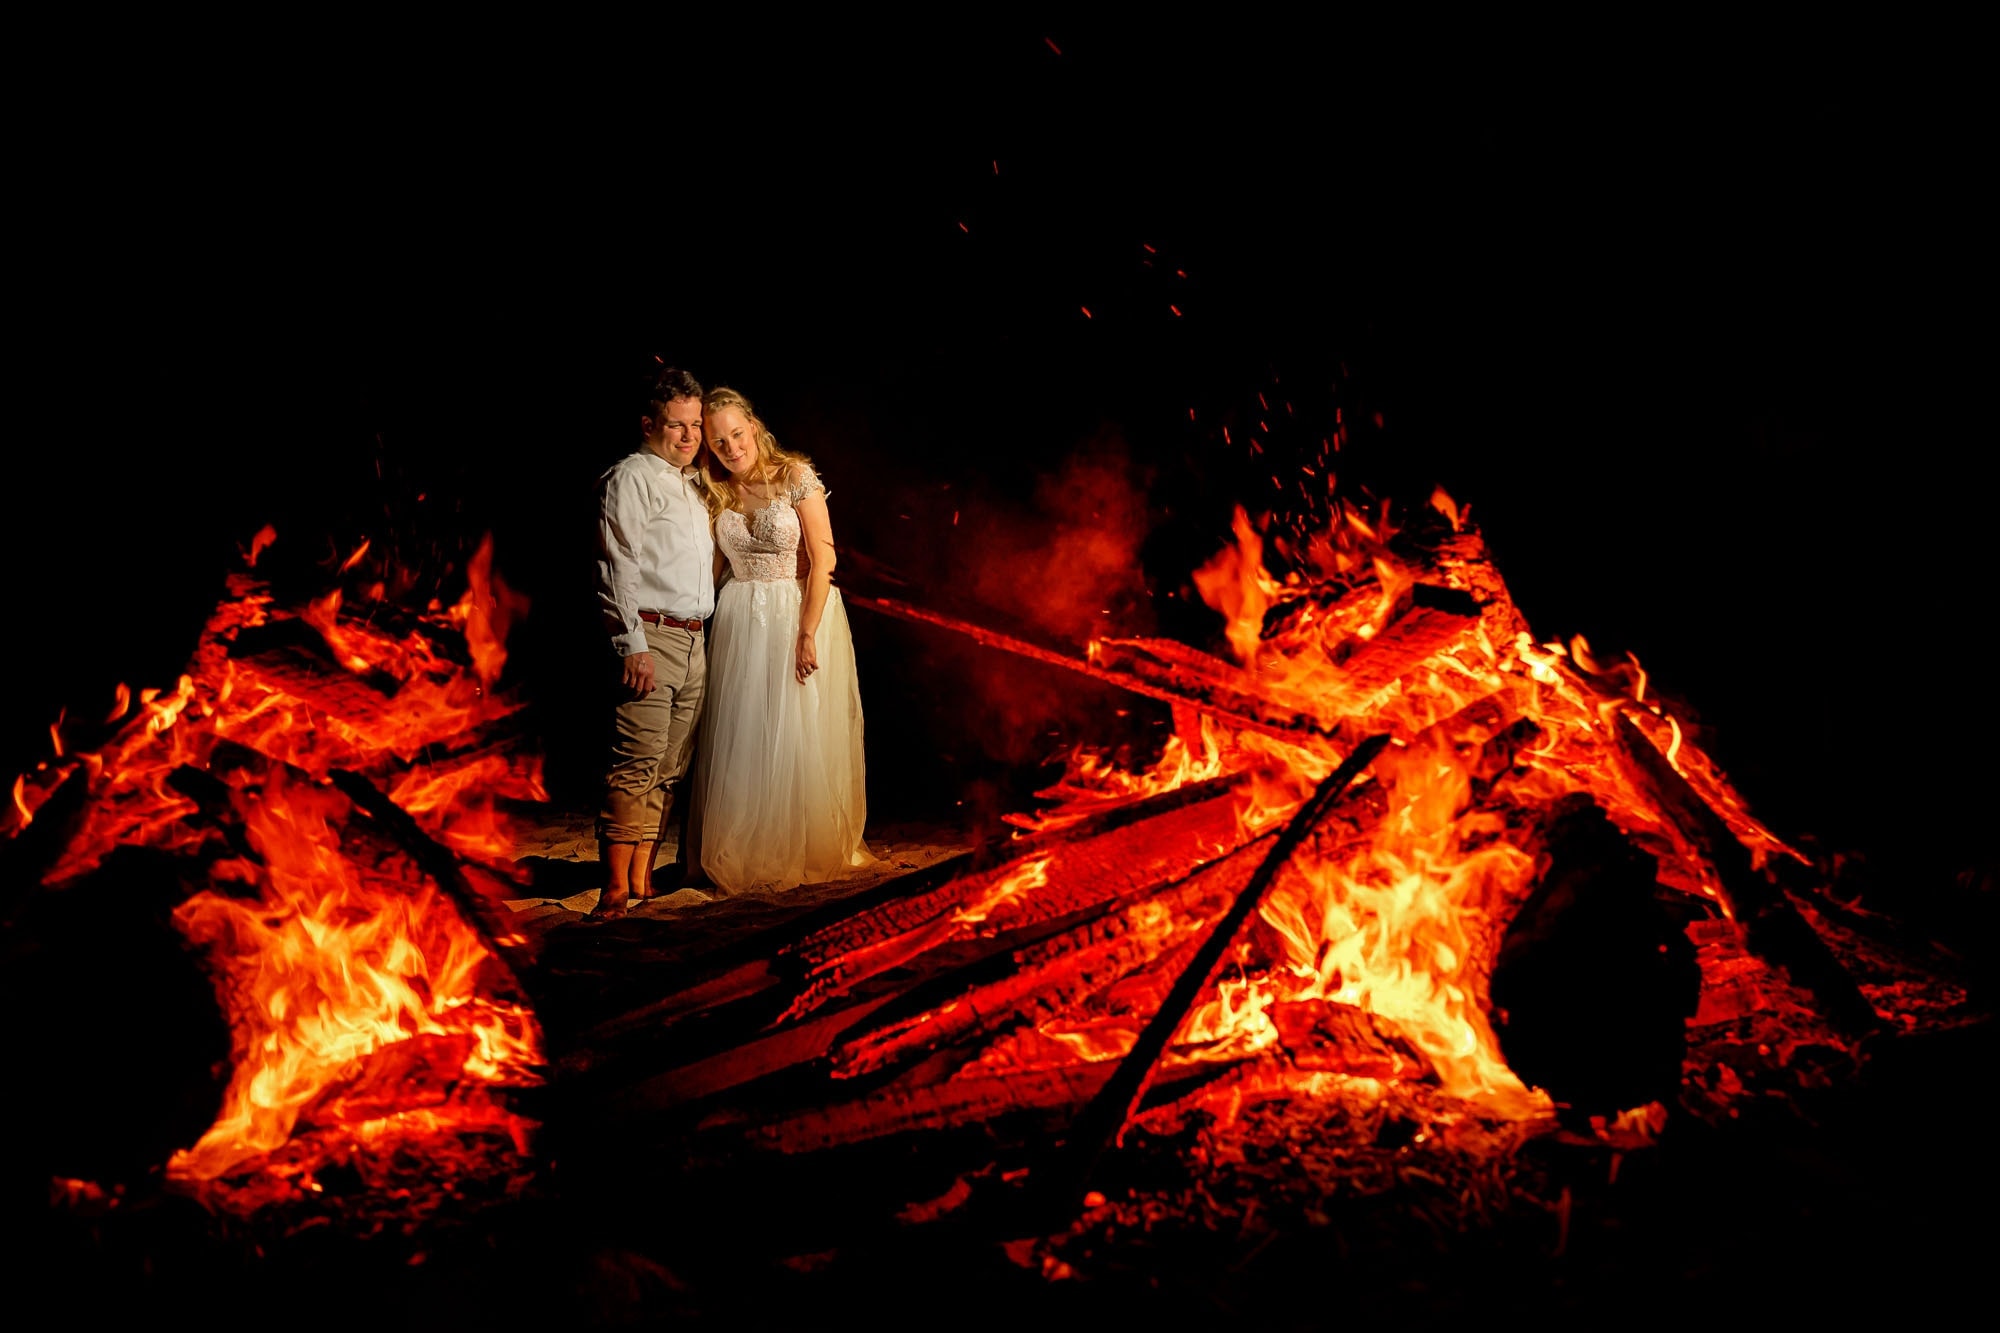 Creative wedding photography: shooting through the bonfire